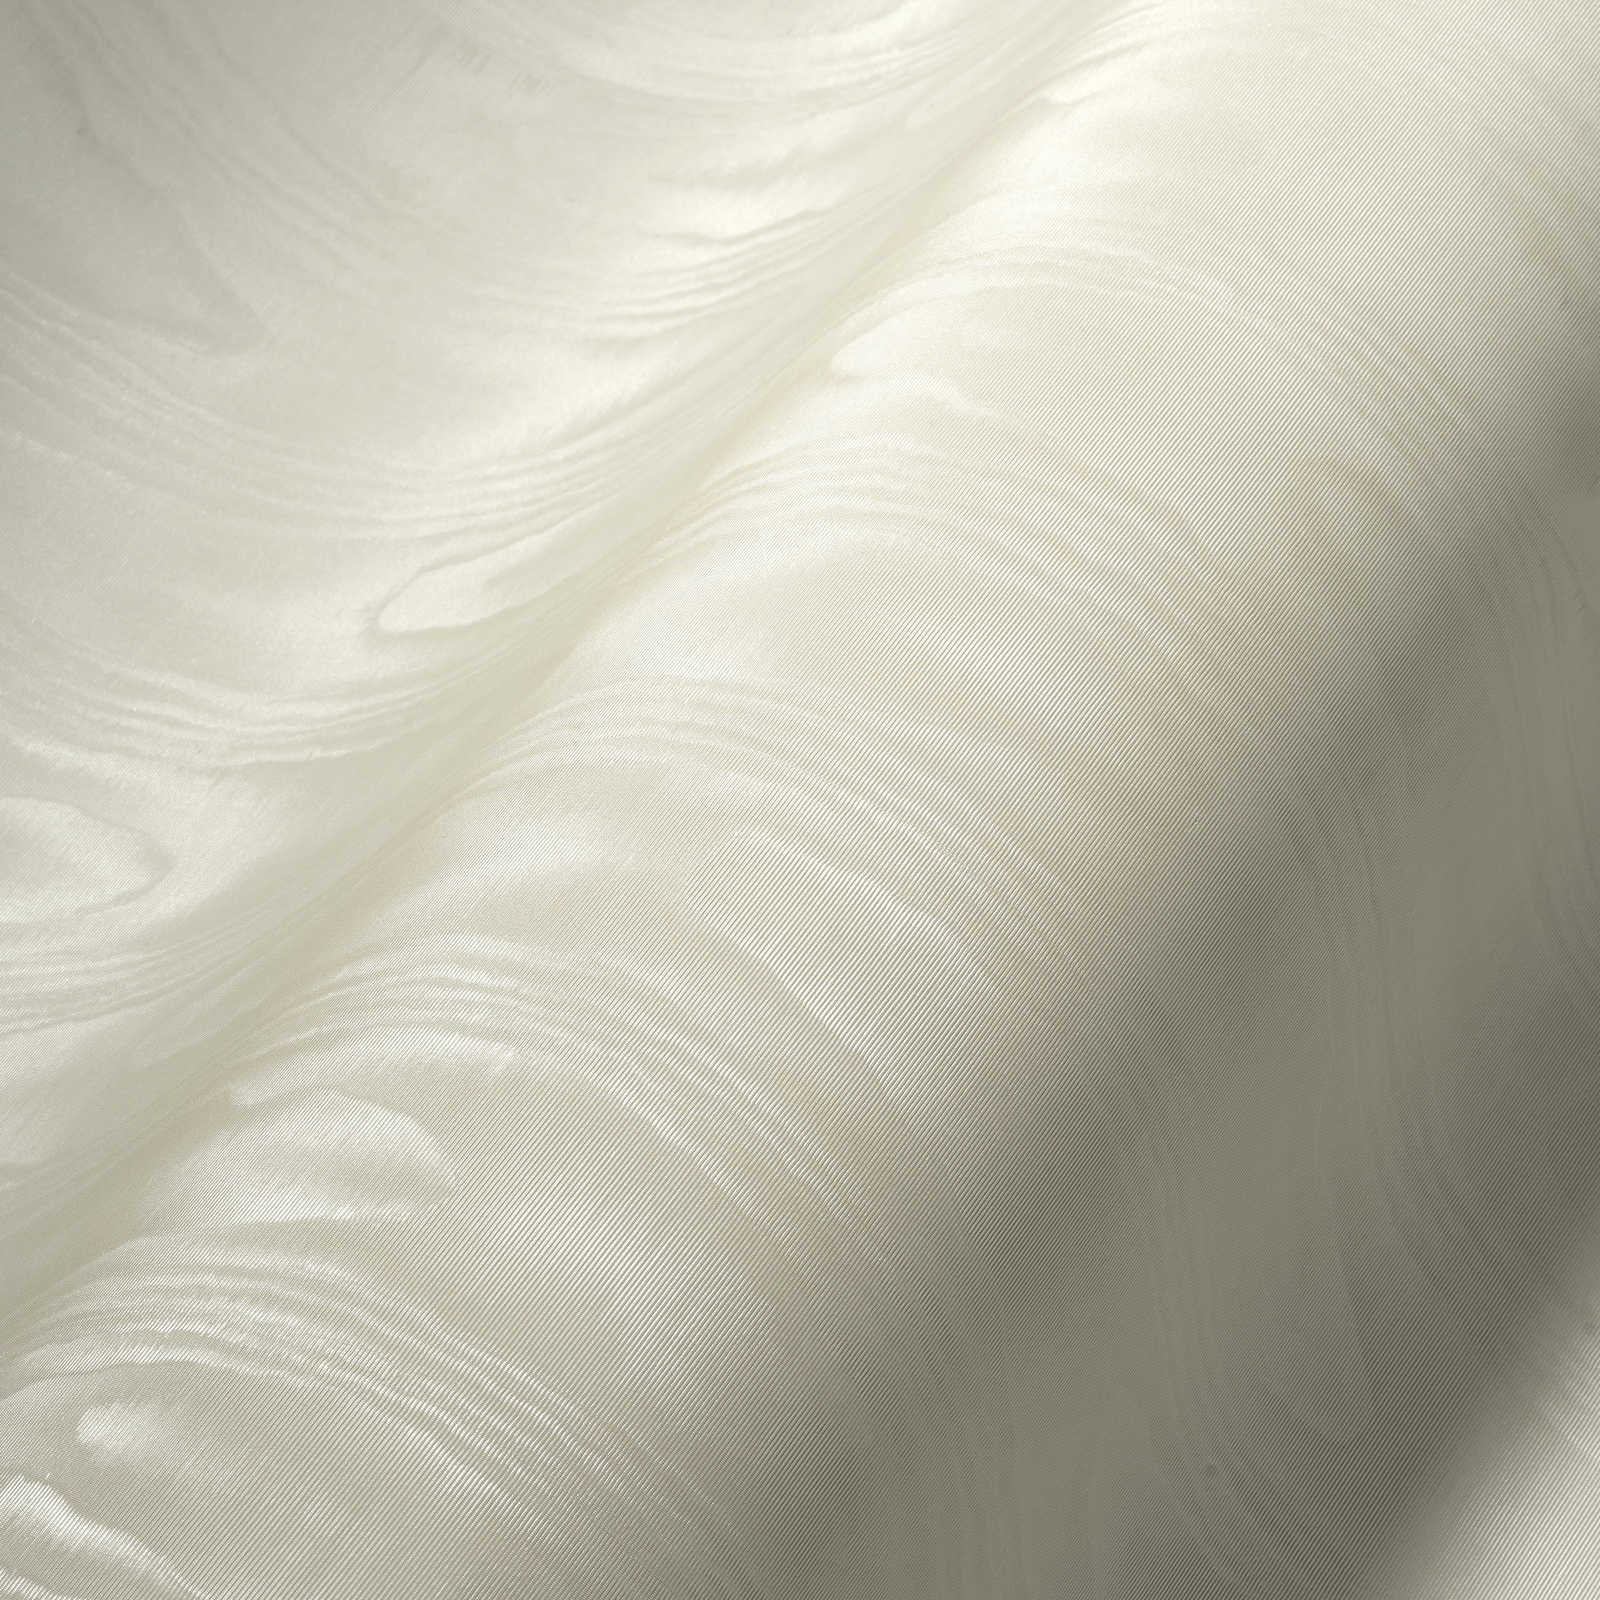             Papel pintado de aspecto textil crema con efecto moiré de seda
        